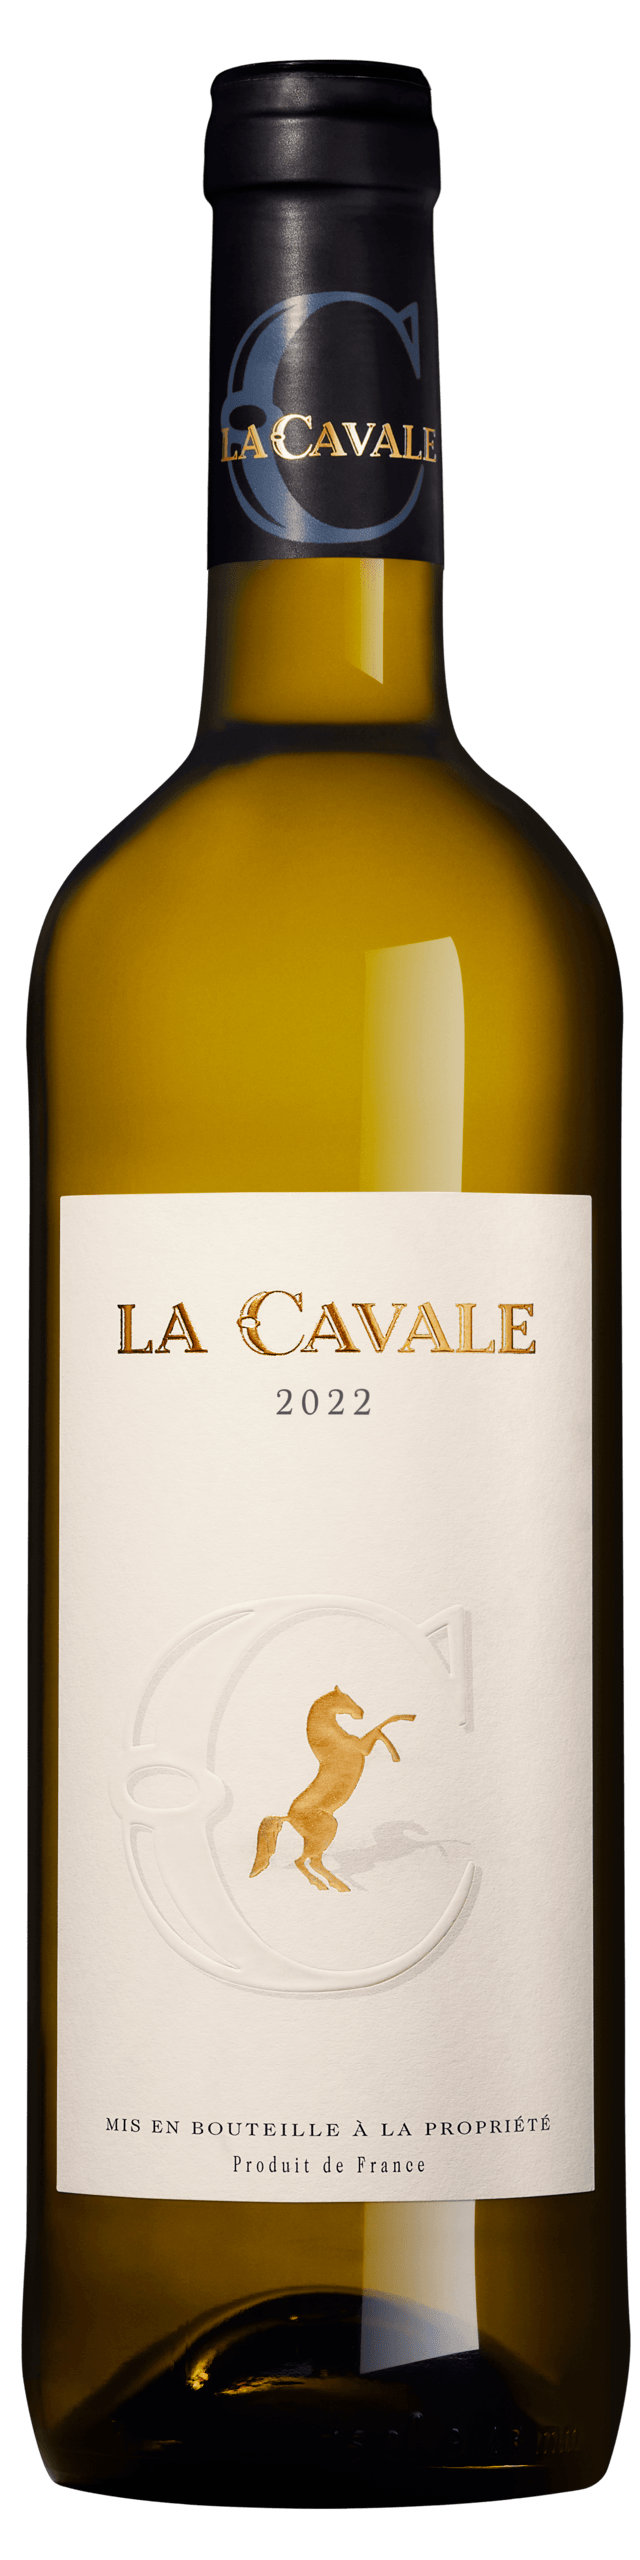 La Cavale blanc 2022 - Domaine La Cavale